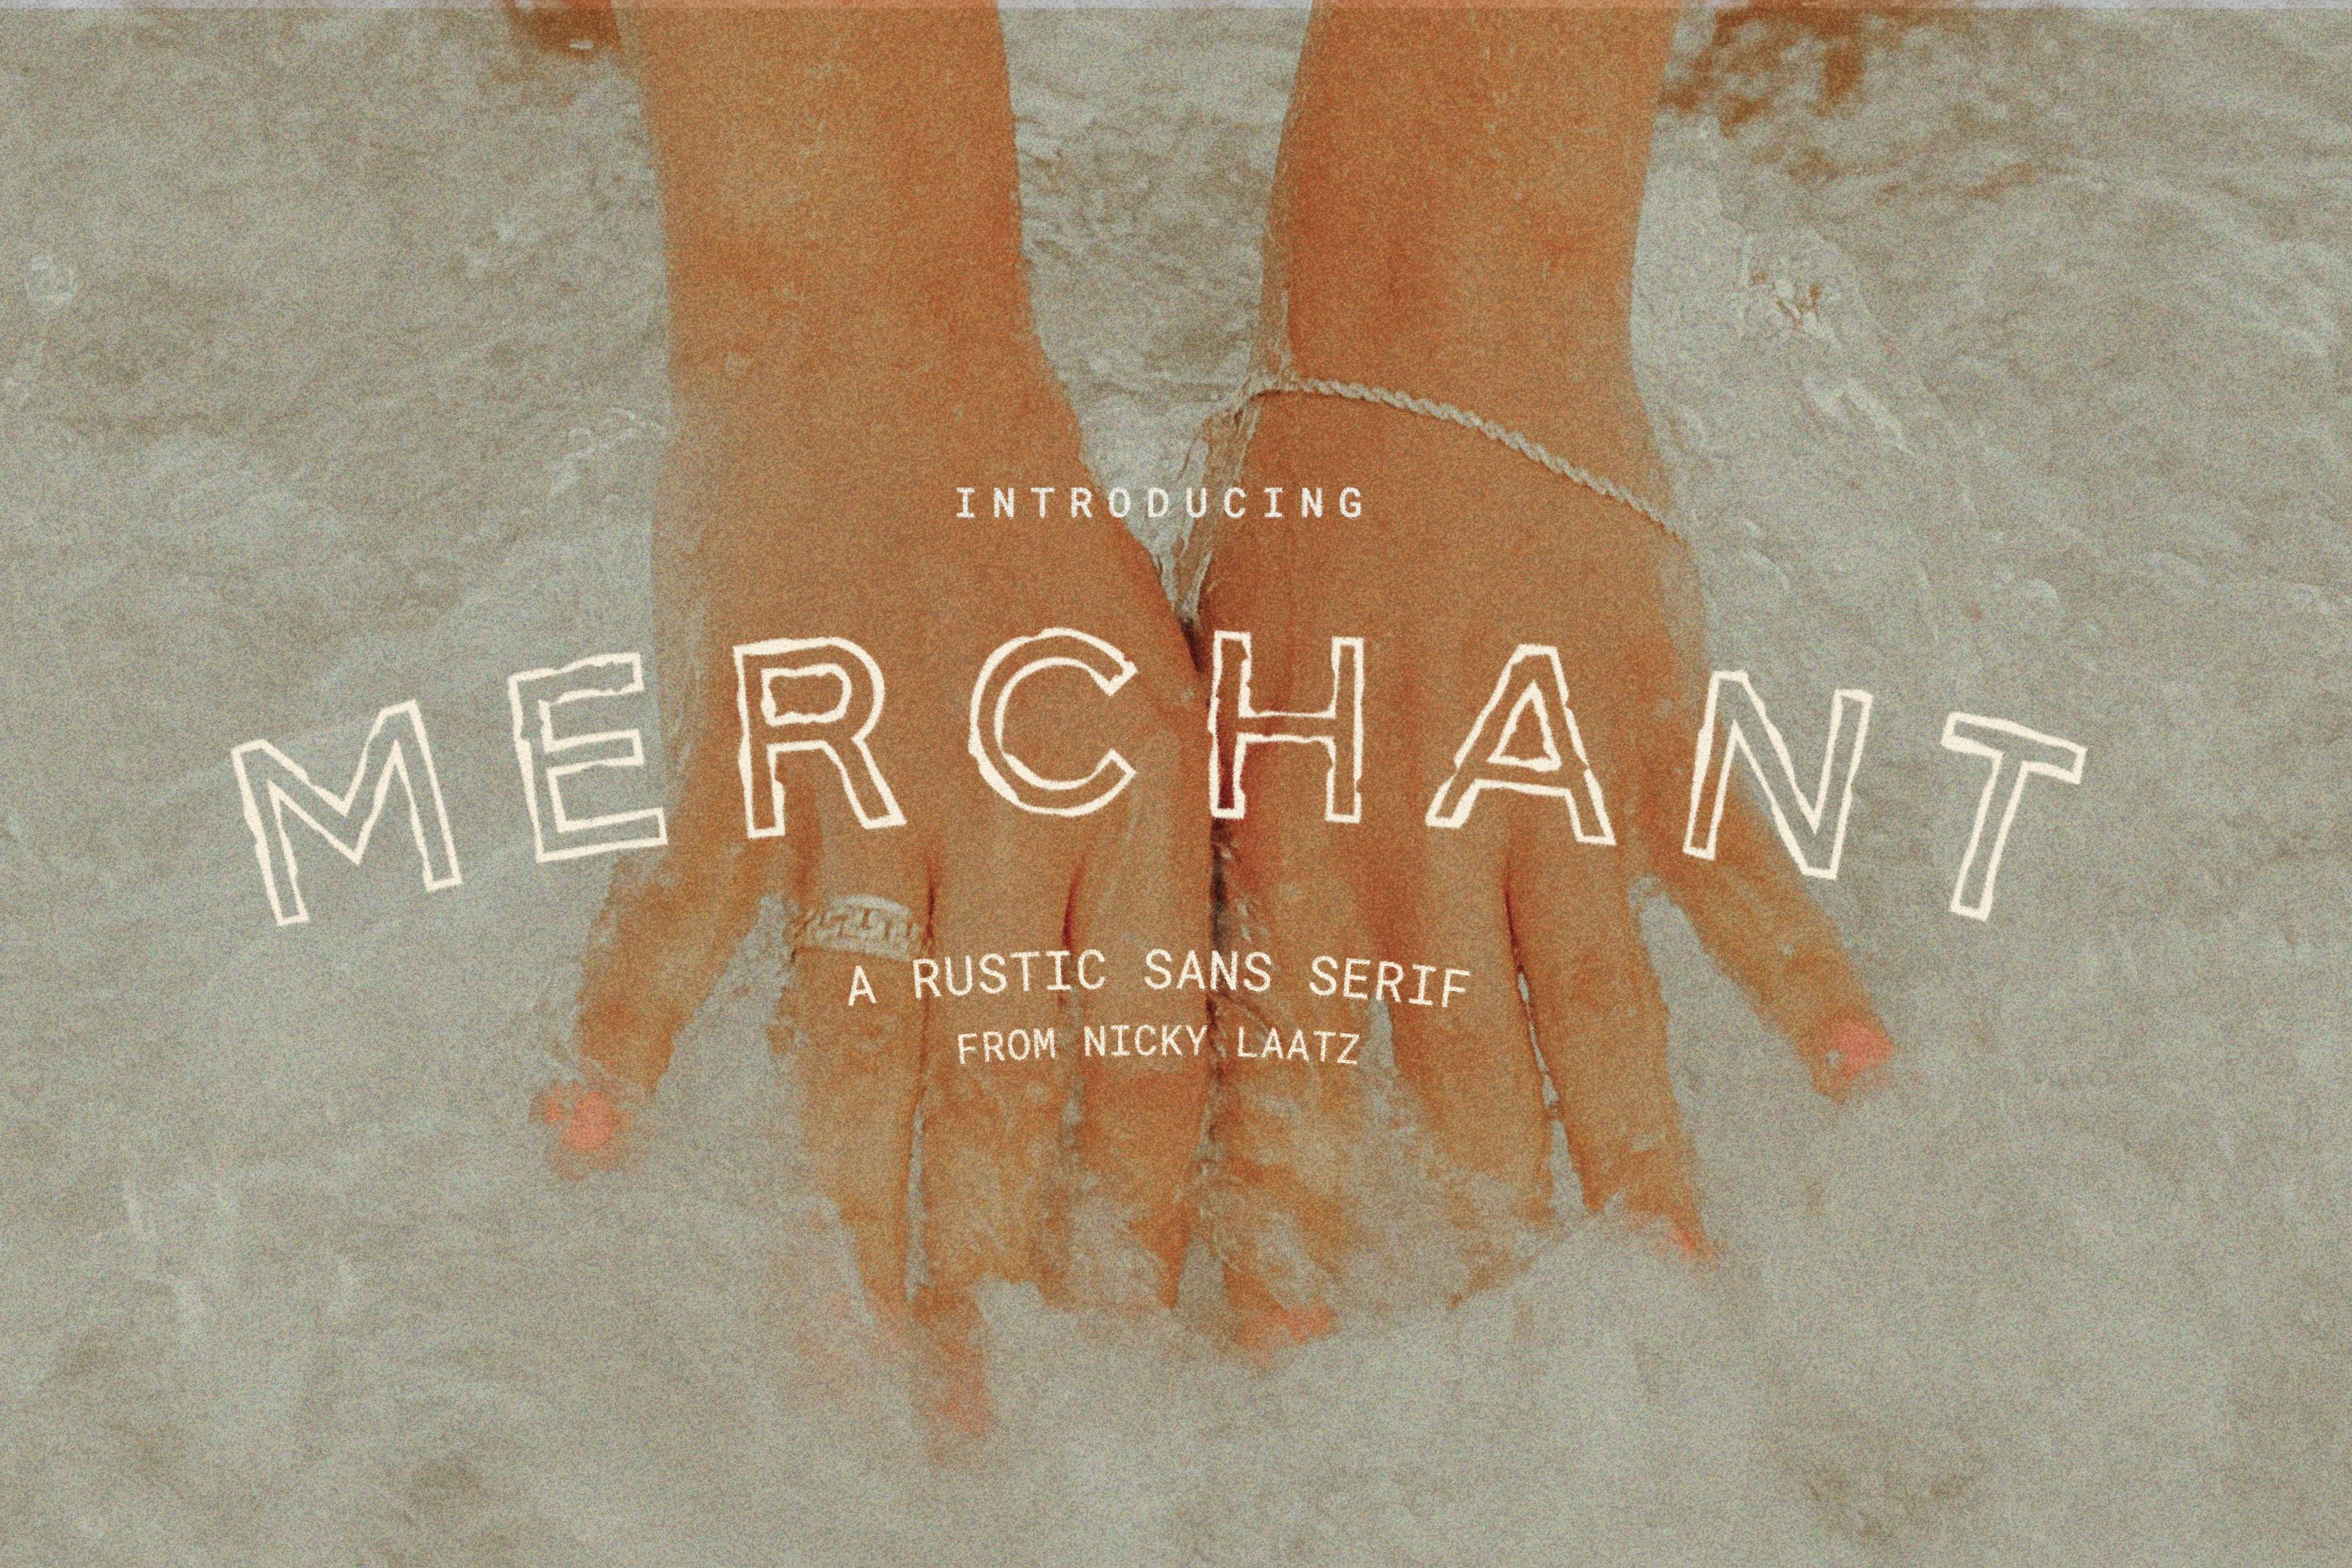 Merchant - Rustic Sans cover image.